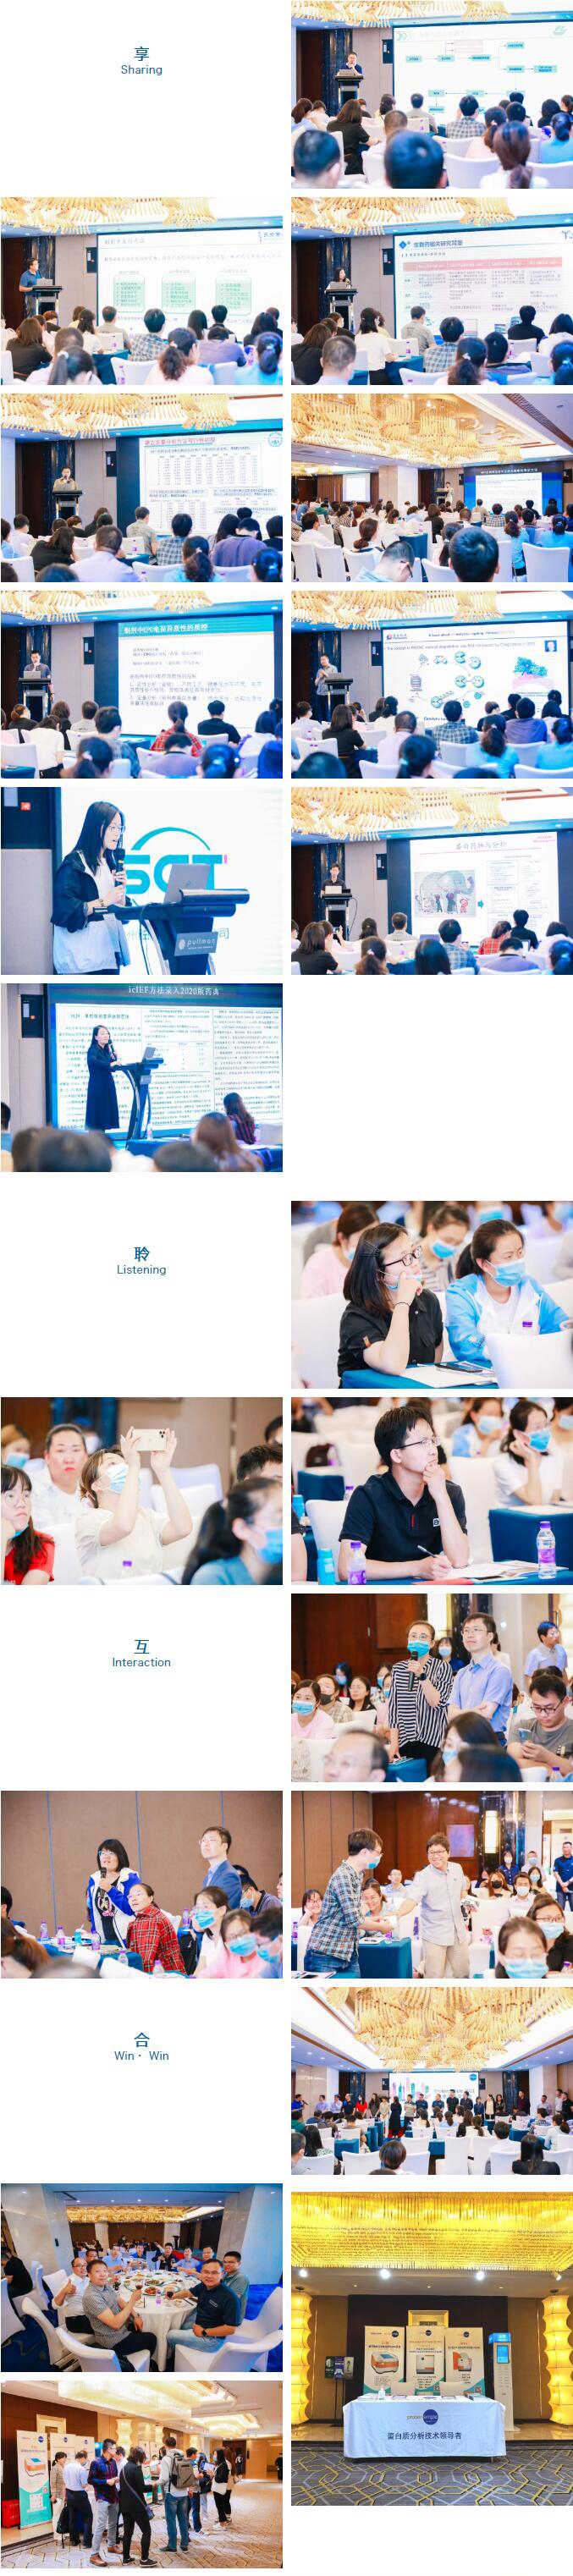 活动回顾 | ProteinSimple 2021生物制药行业用户会 · 北京站